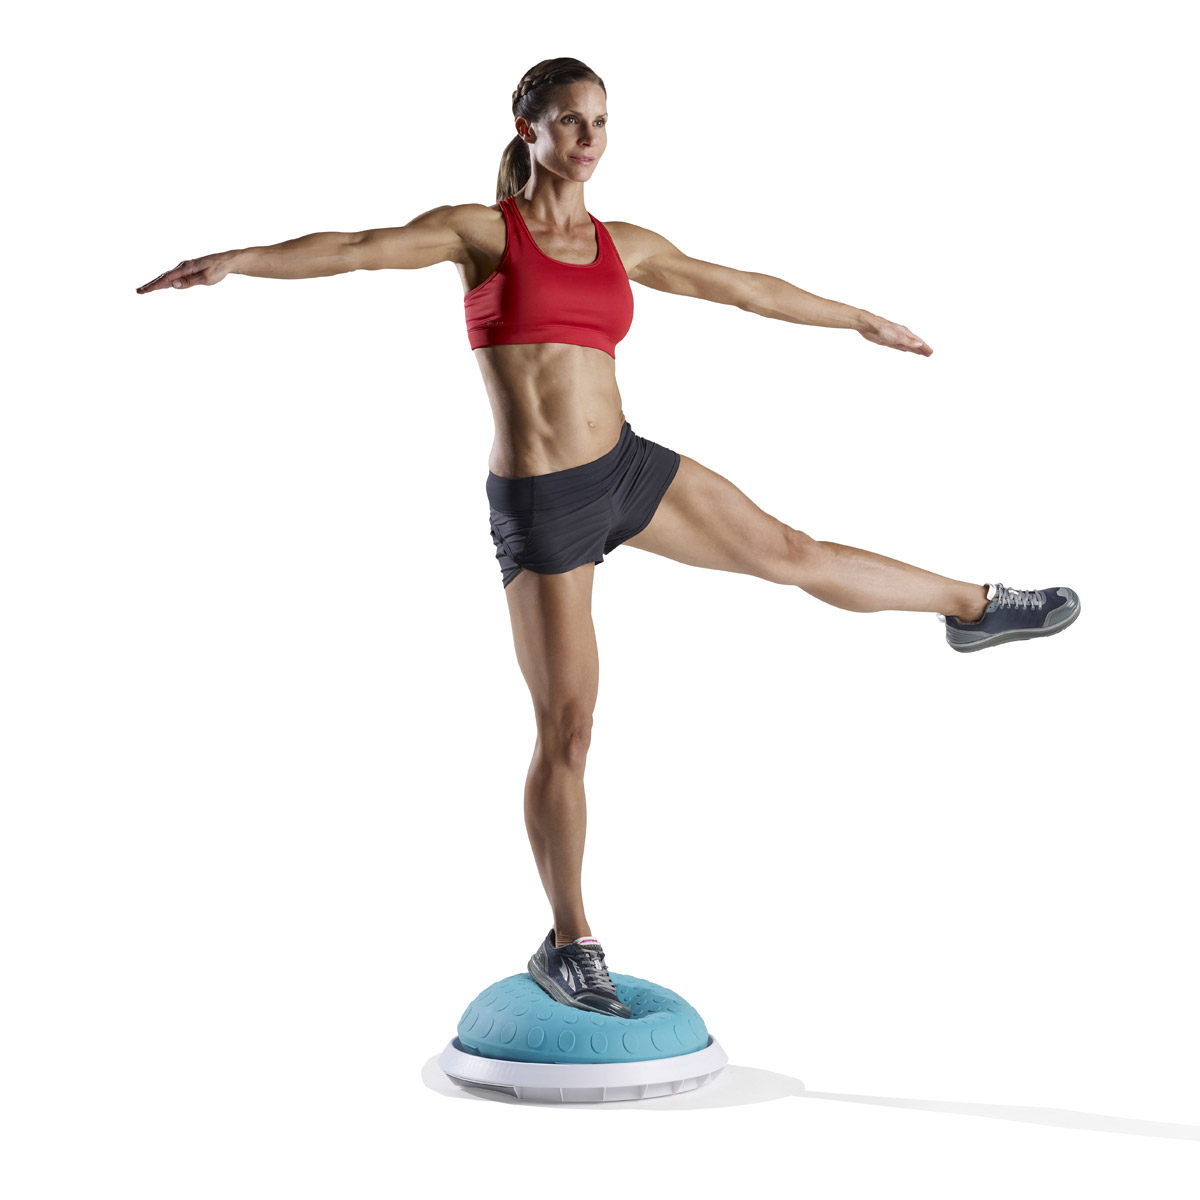 Сохранение равновесия гимнаста. Балансировочная полусфера - Inex Balance Trainer. Баланс на одной ноге. Упражнения на равновесие. Стойка в равновесии.